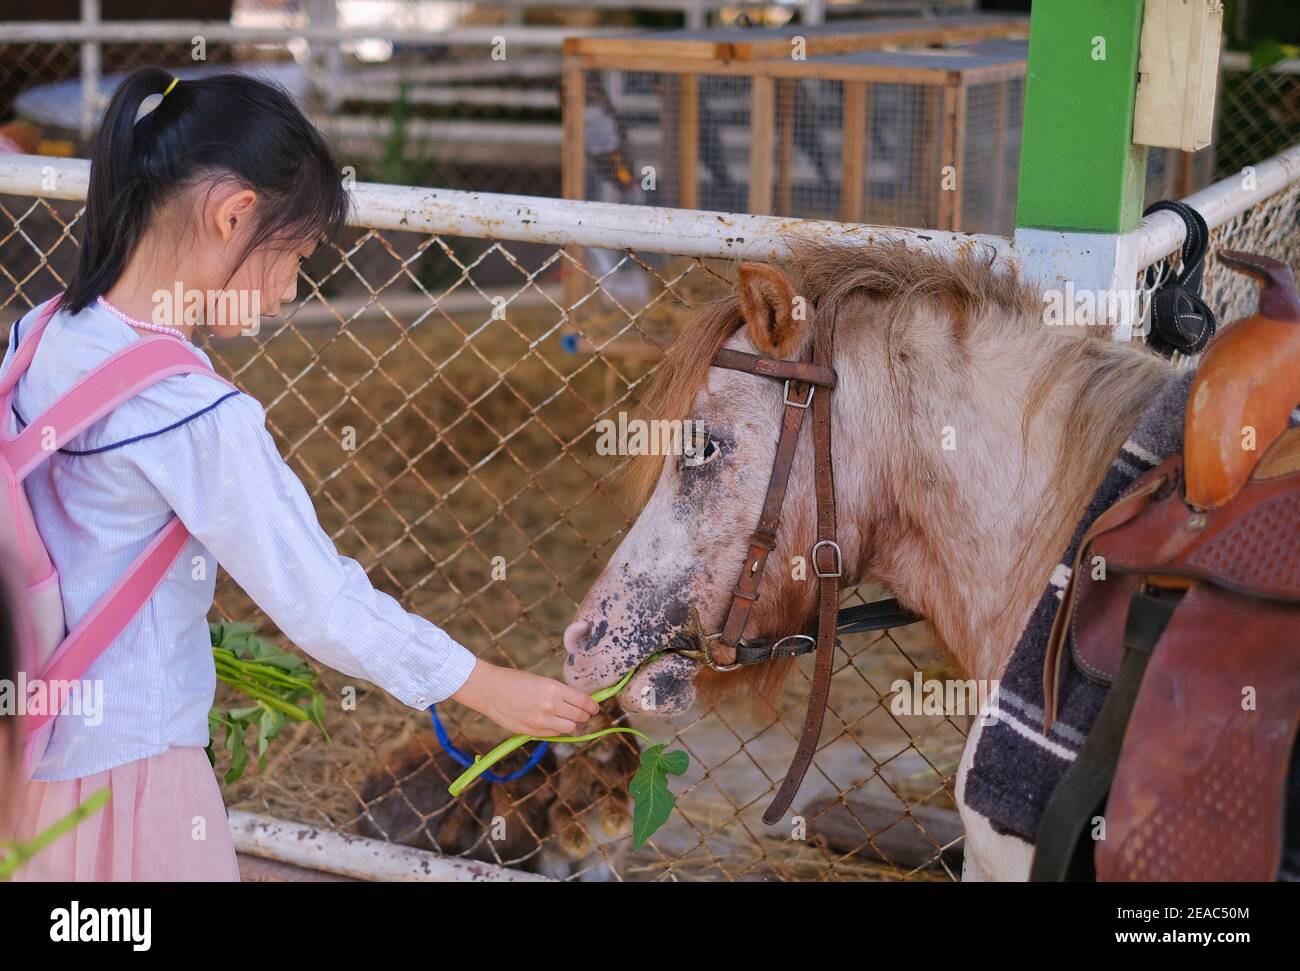 Une jeune fille asiatique mignonne nourrit des feuilles d'un poney brun dans une ferme. Banque D'Images